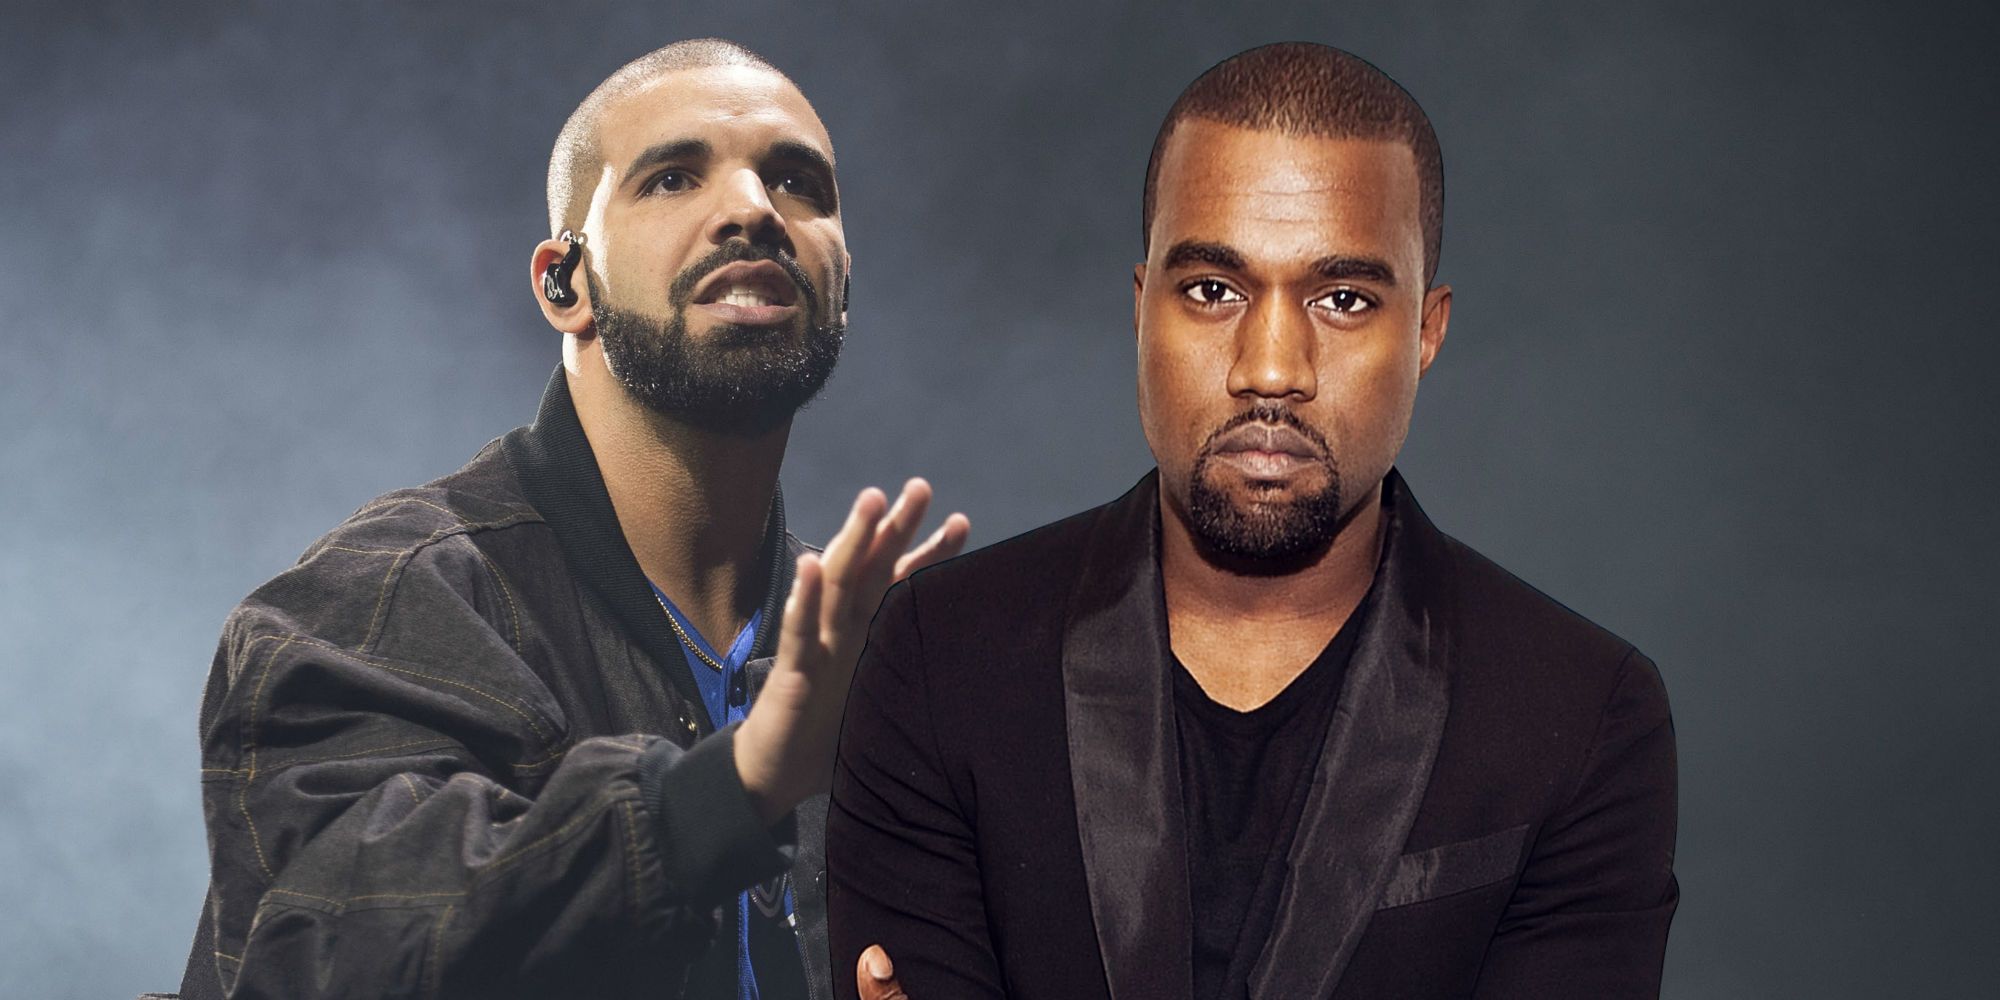 KUWTK: Dentro de la pelea de rap Trippie Redd de Kanye West y Drake